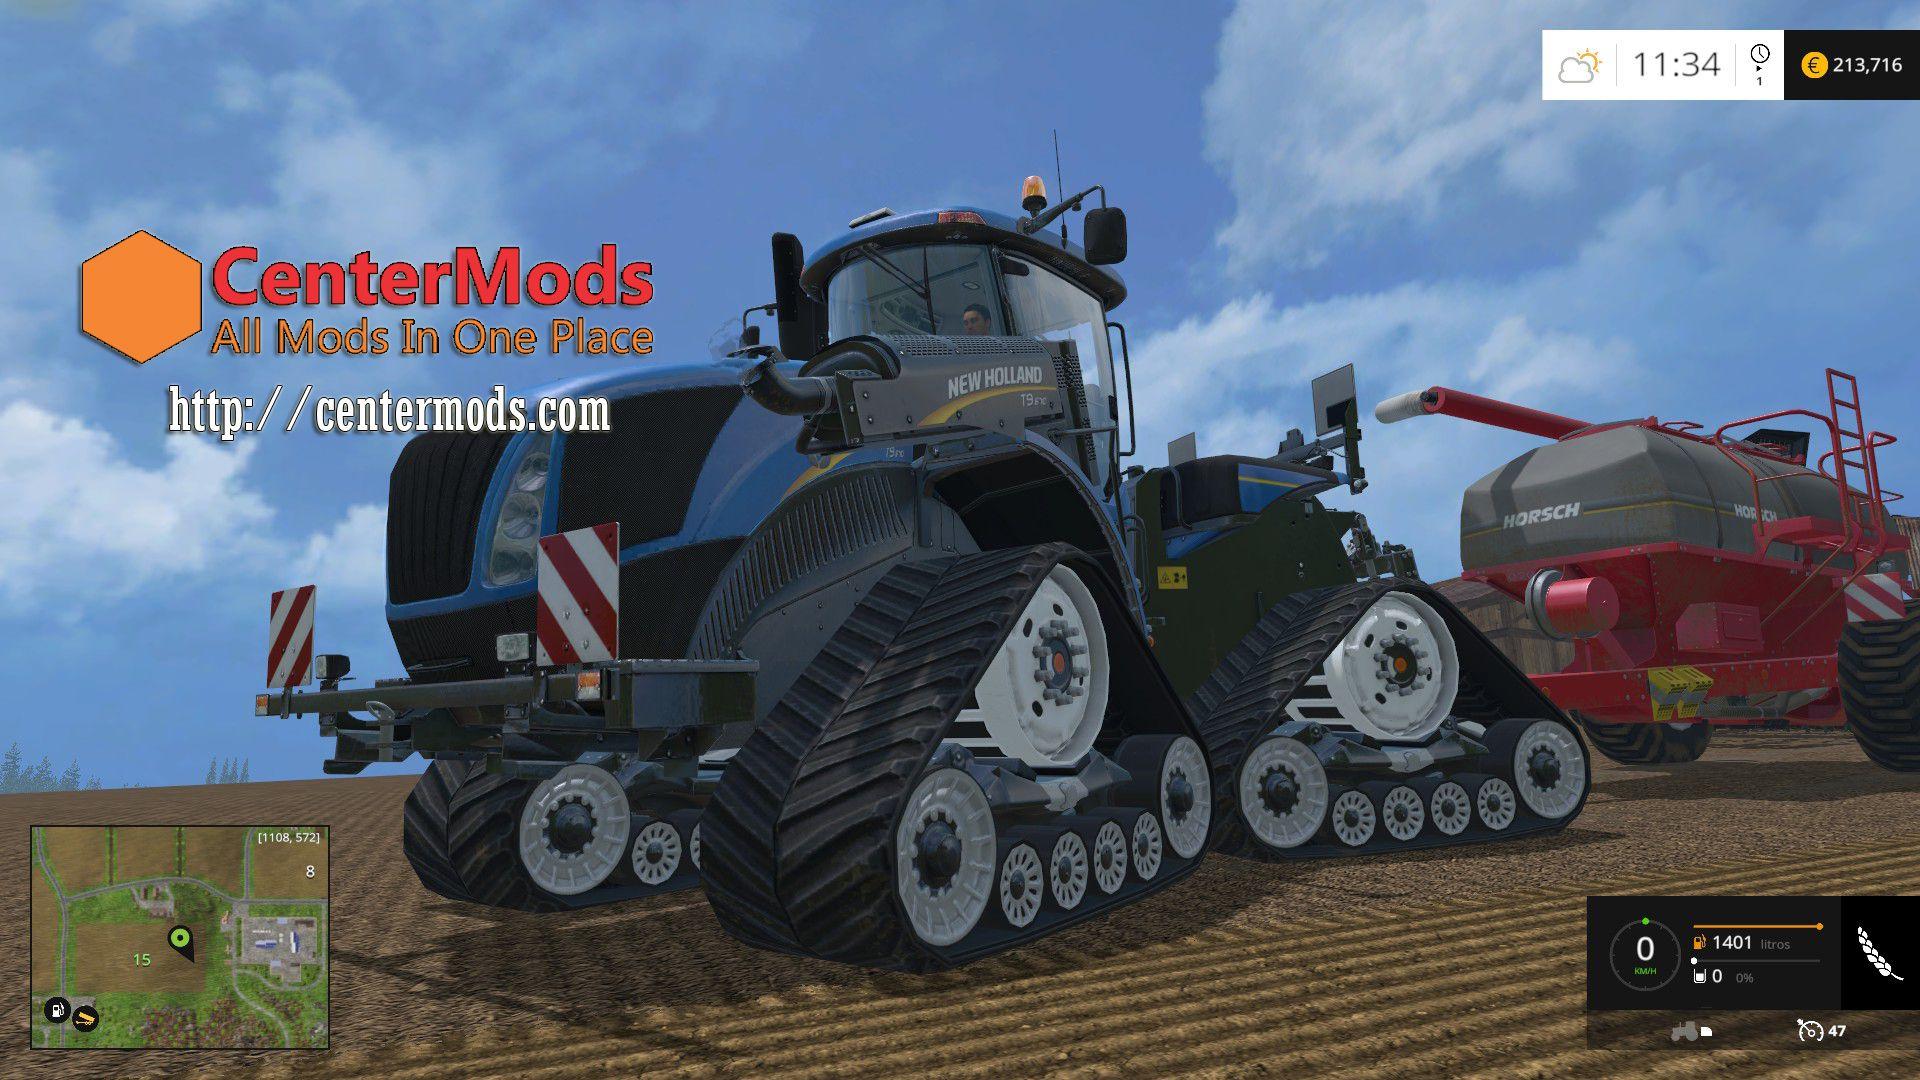 New Holland T9 670 Smarttrax V20 • Farming Simulator 19 17 22 Mods Fs19 17 22 Mods 6705